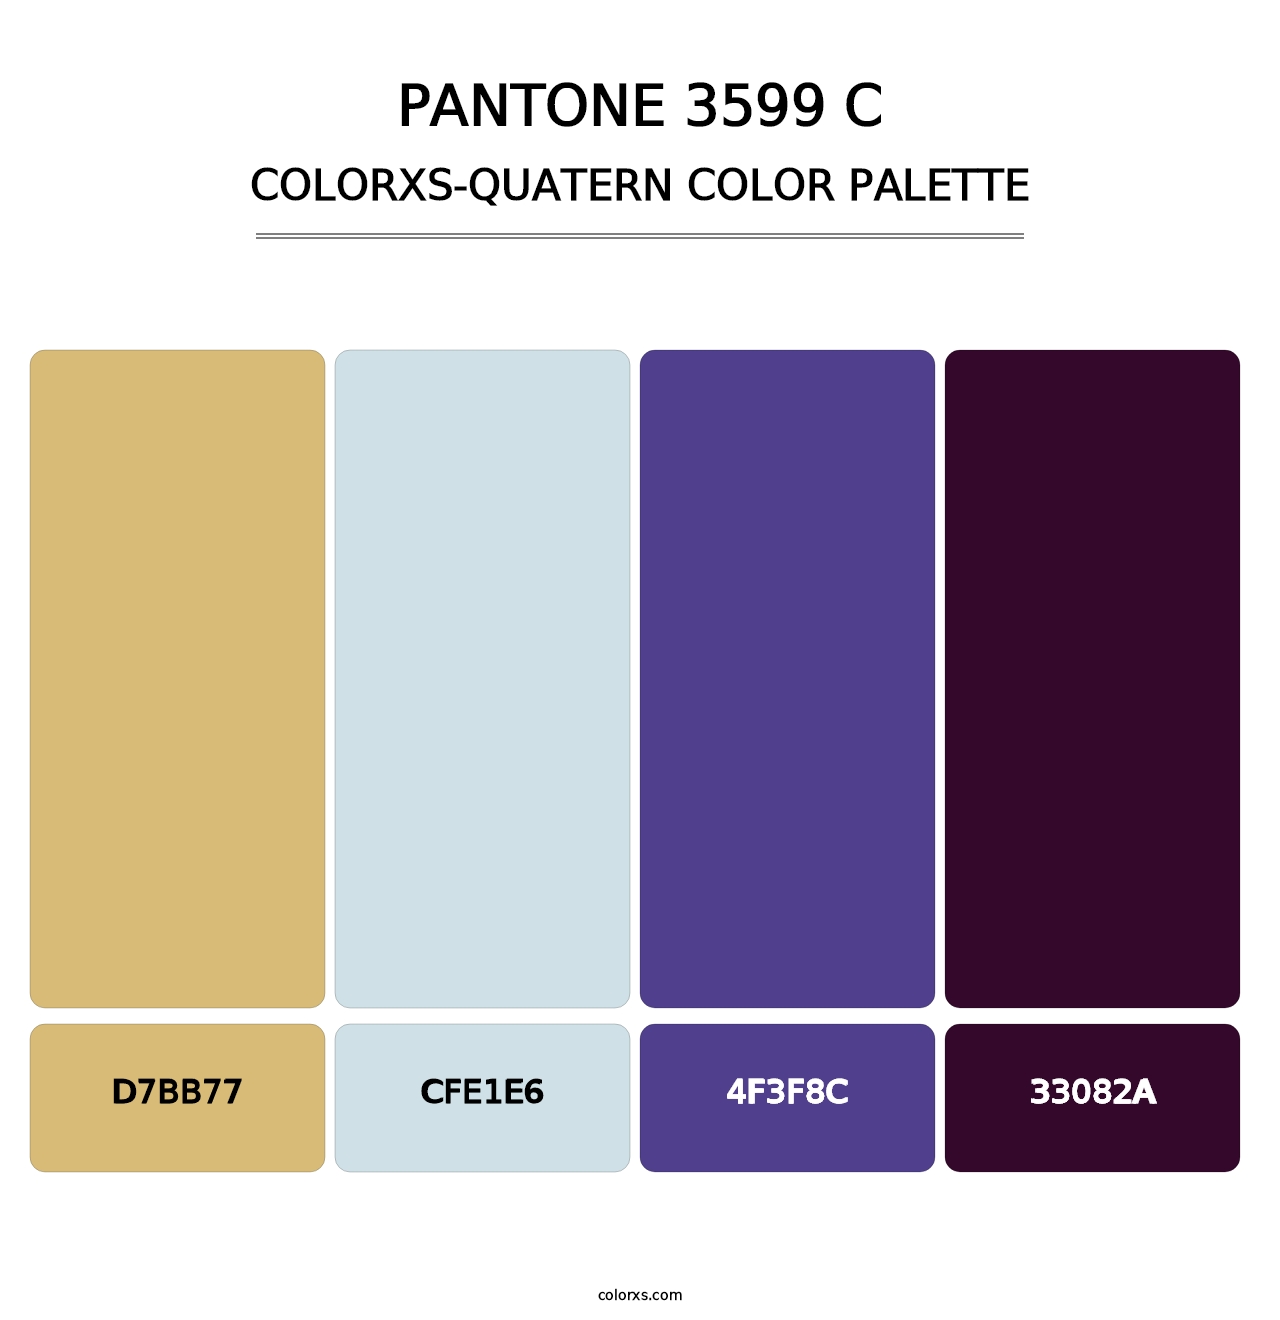 PANTONE 3599 C - Colorxs Quatern Palette